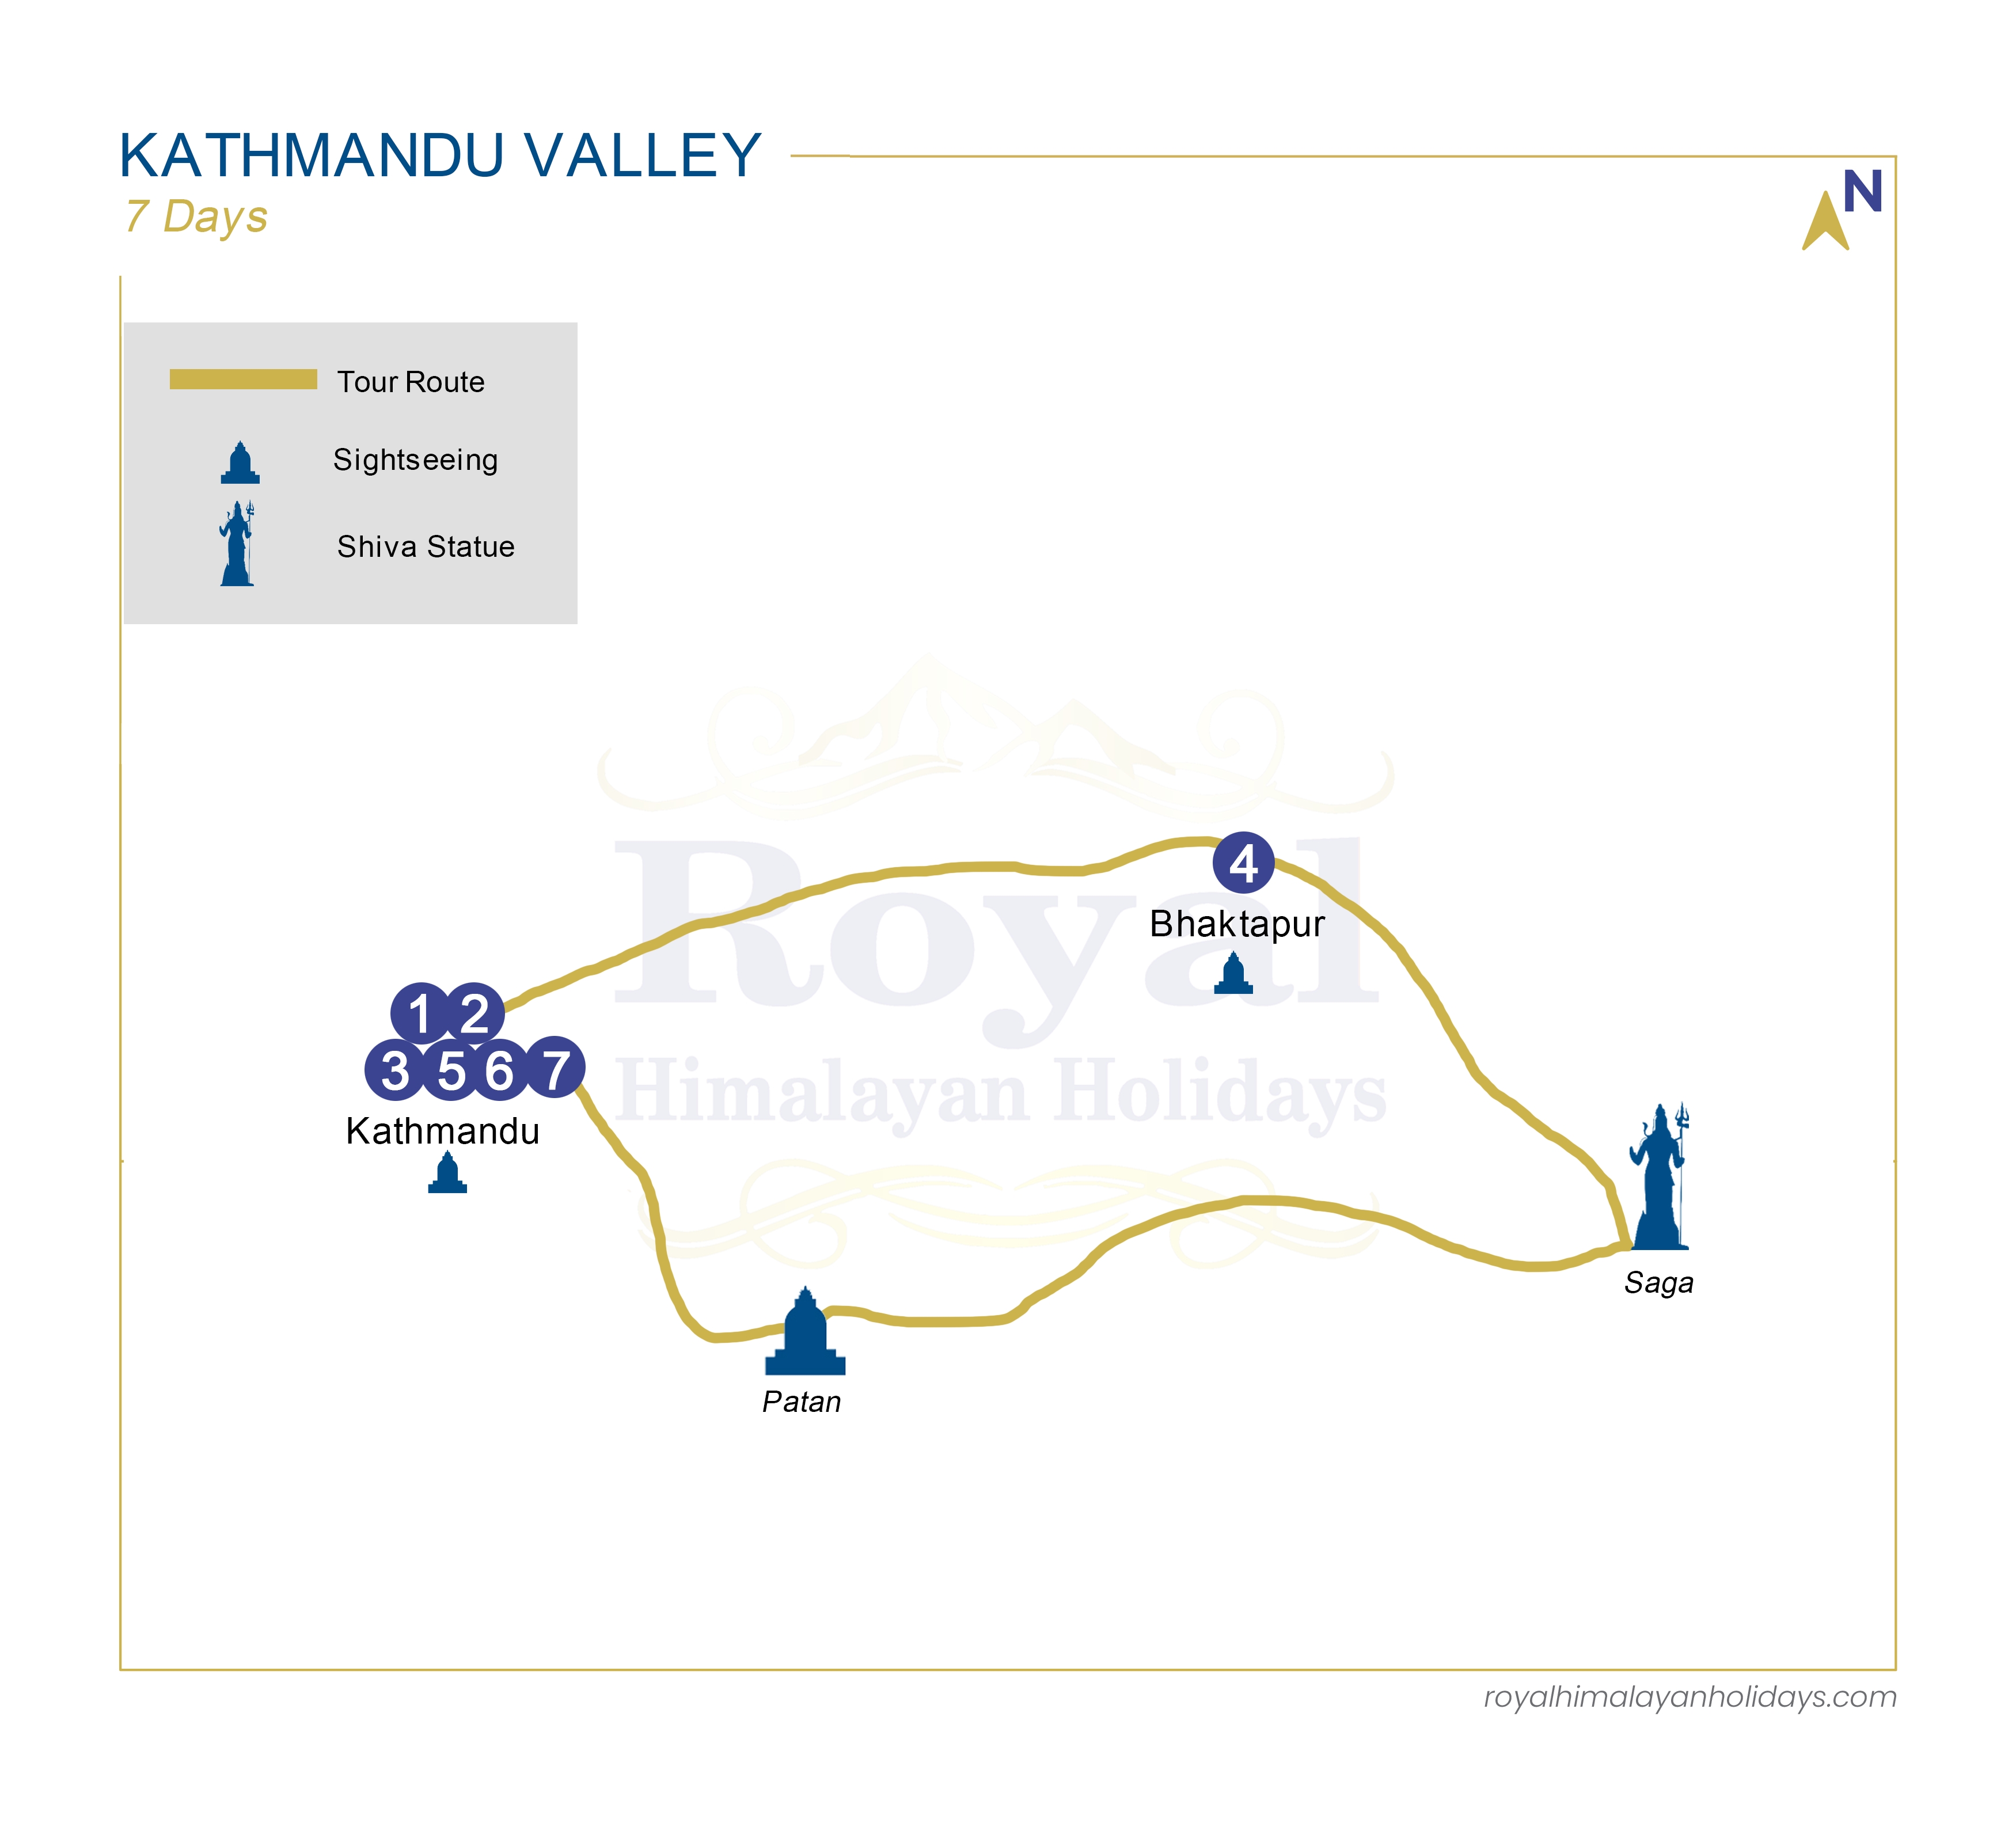 The Kathmandu Valley Tour